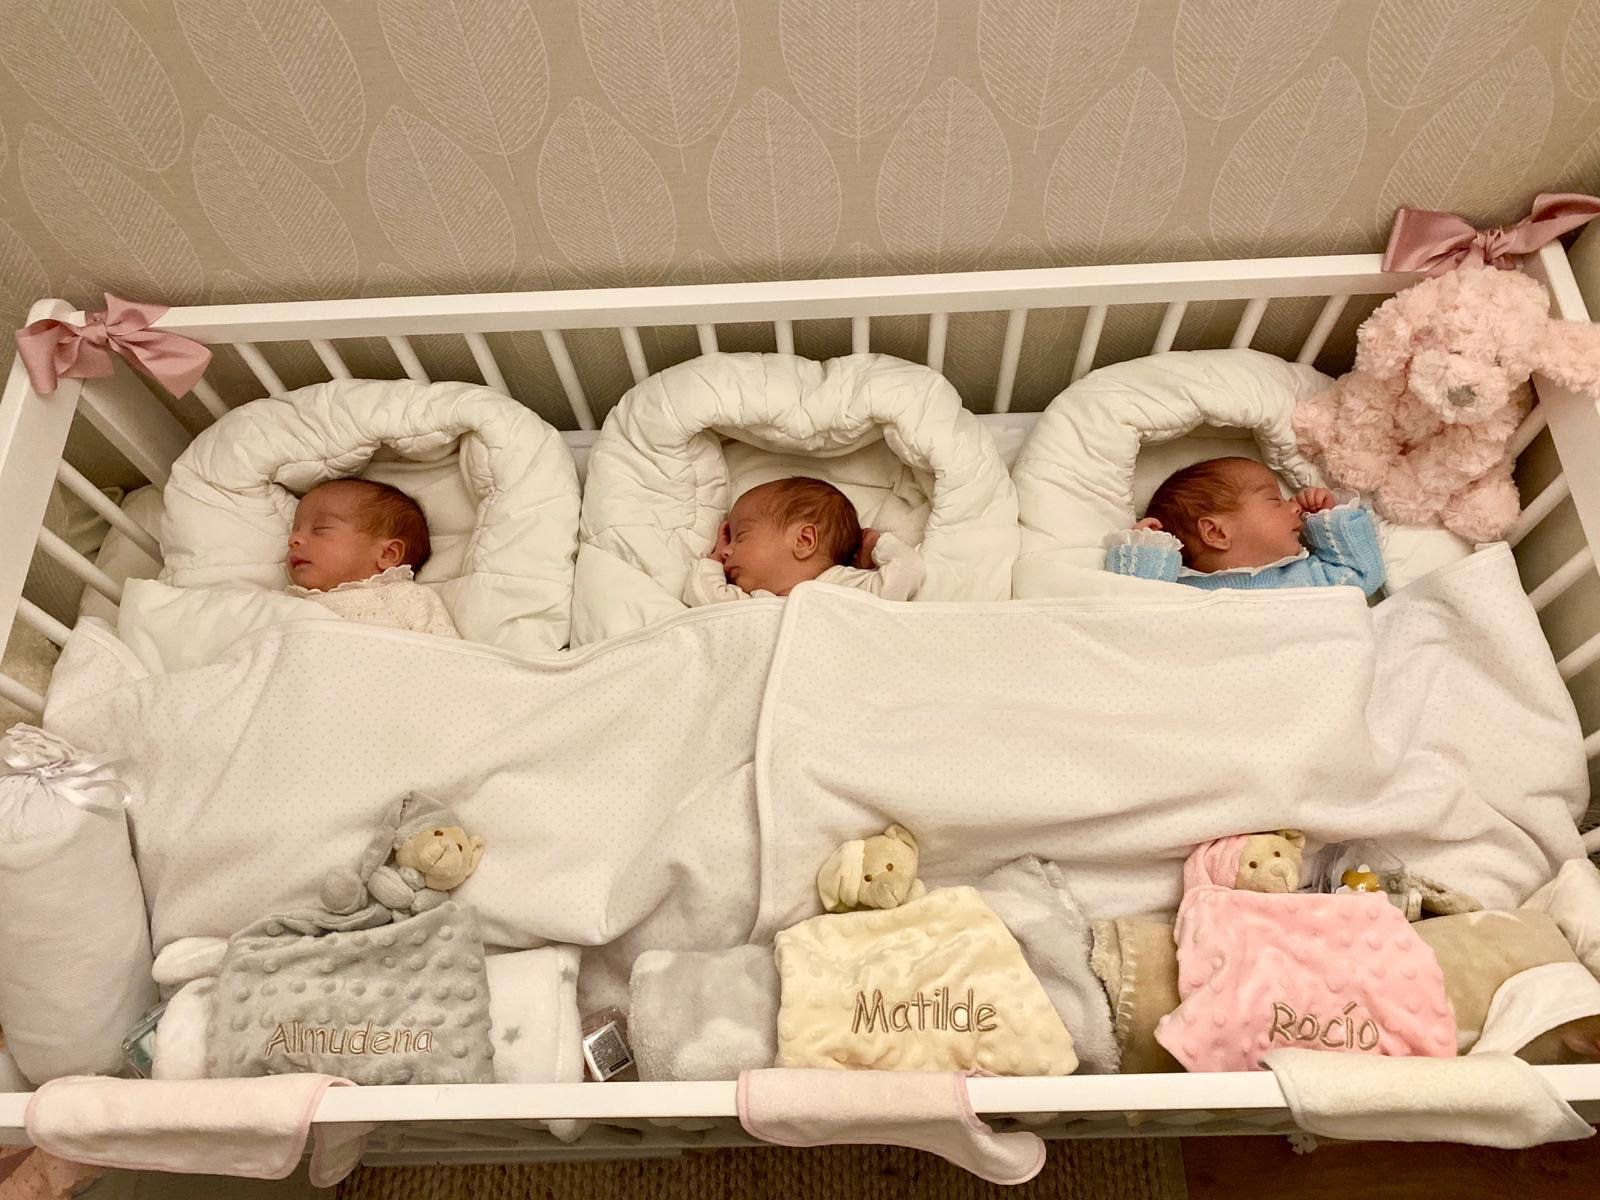 Las trillizas Matilde, Rocío y Almudena que nacieron a las 33 semanas de gestación y pesaron 1500, 1500 y 1600 gramos.